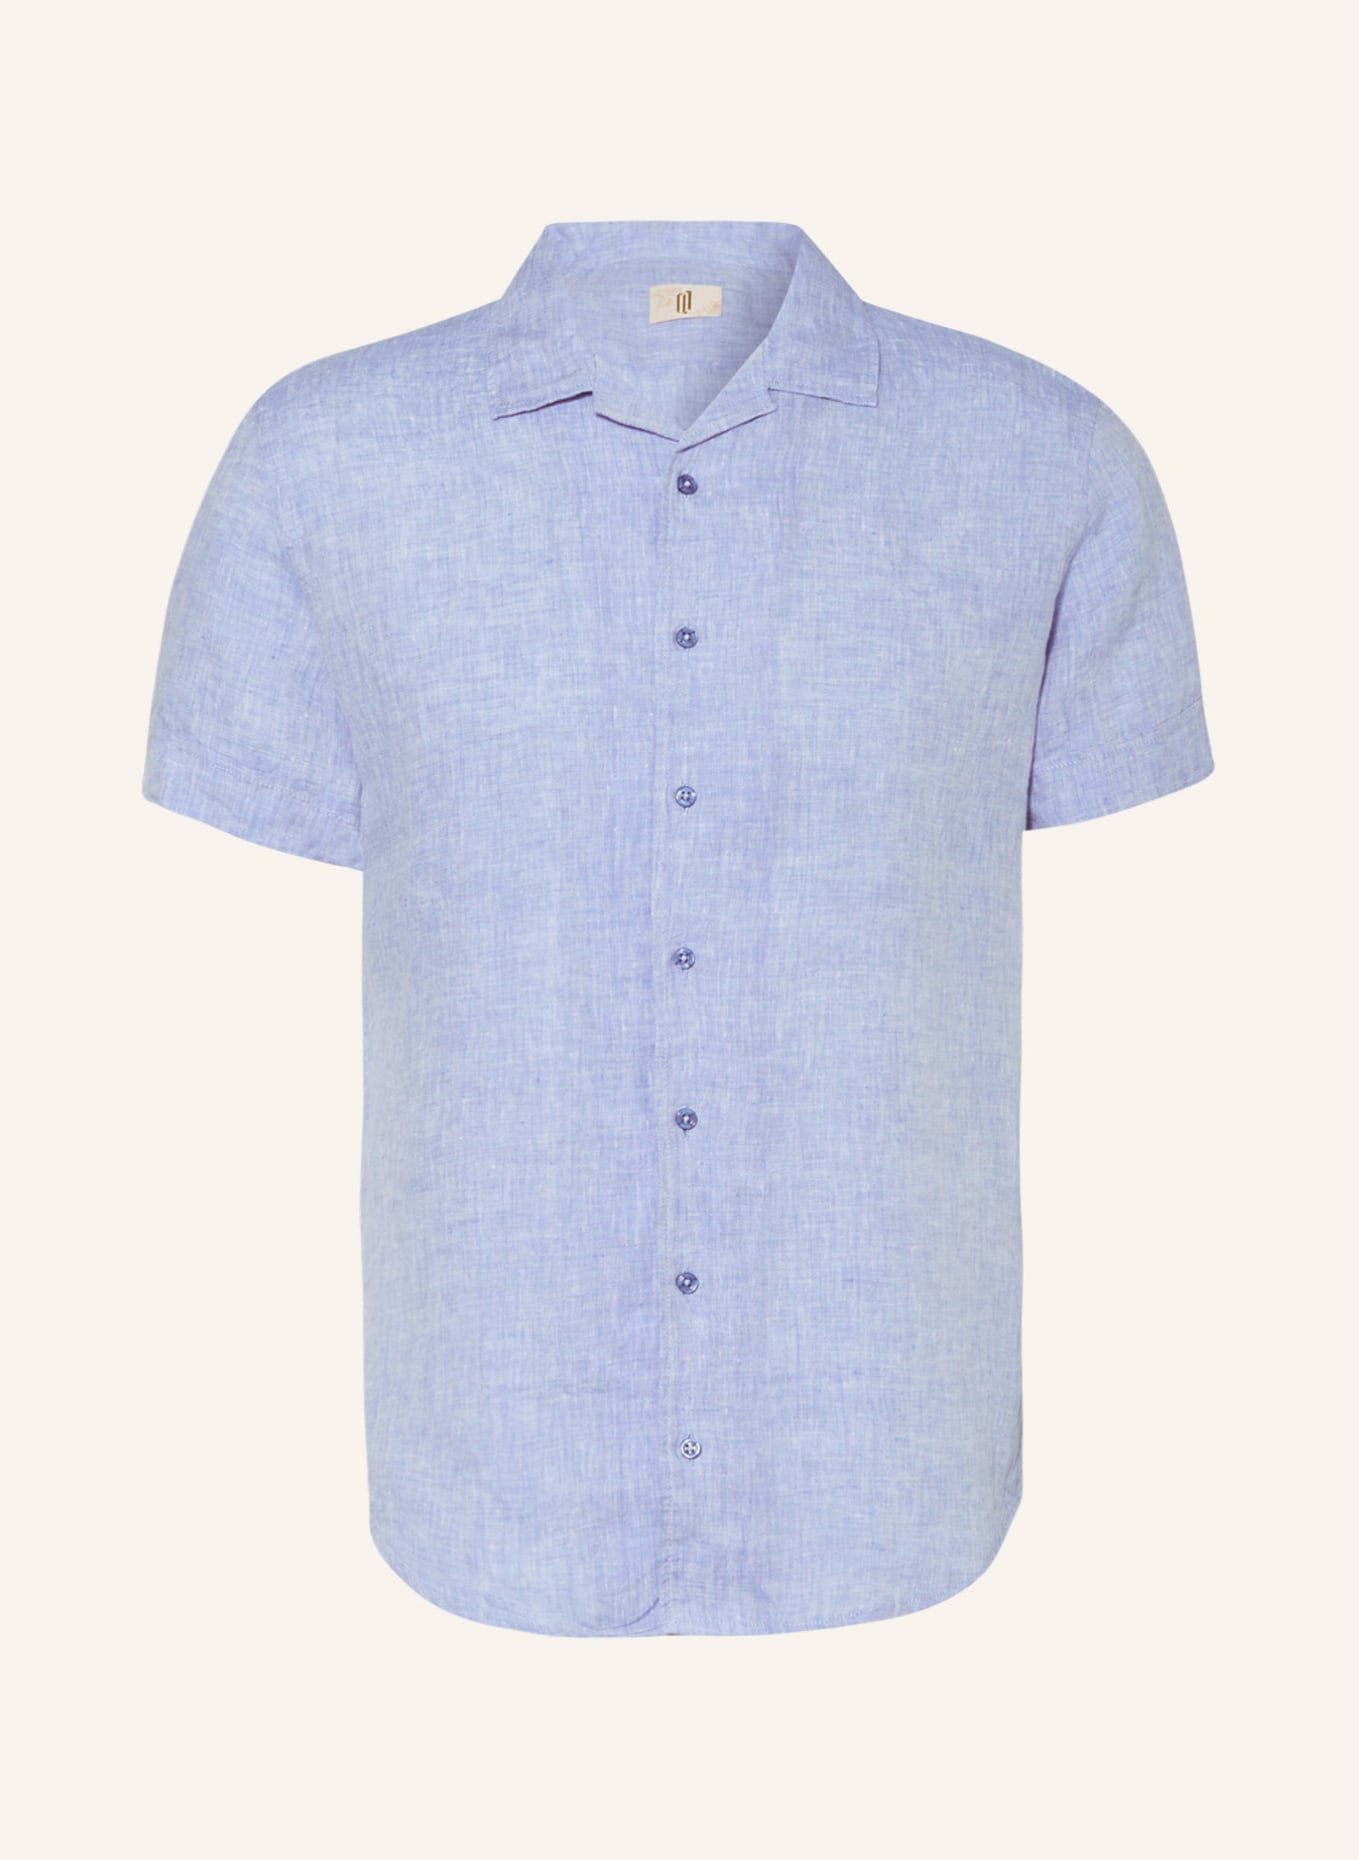 Q1 Manufaktur Short sleeve shirt extra slim fit made of linen, Color: LIGHT BLUE (Image 1)